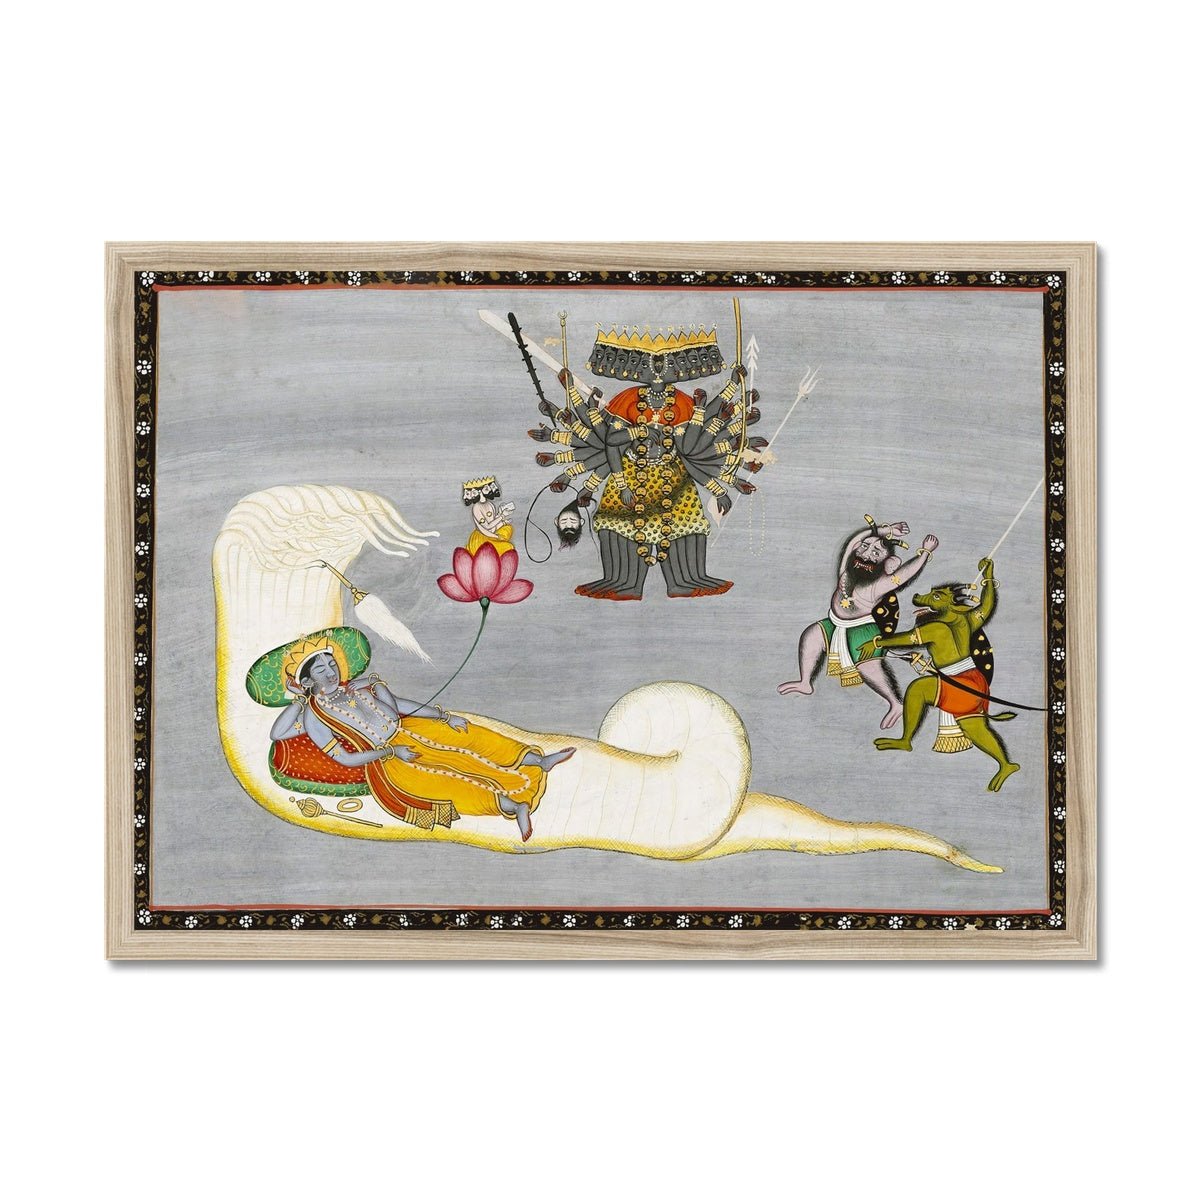 Framed Print A4 Landscape / Natural Frame Vishnu with Demons and Naga, Antique Indian Hindu Folk Art, 19th Century Traditional Vedic Framed Art Print